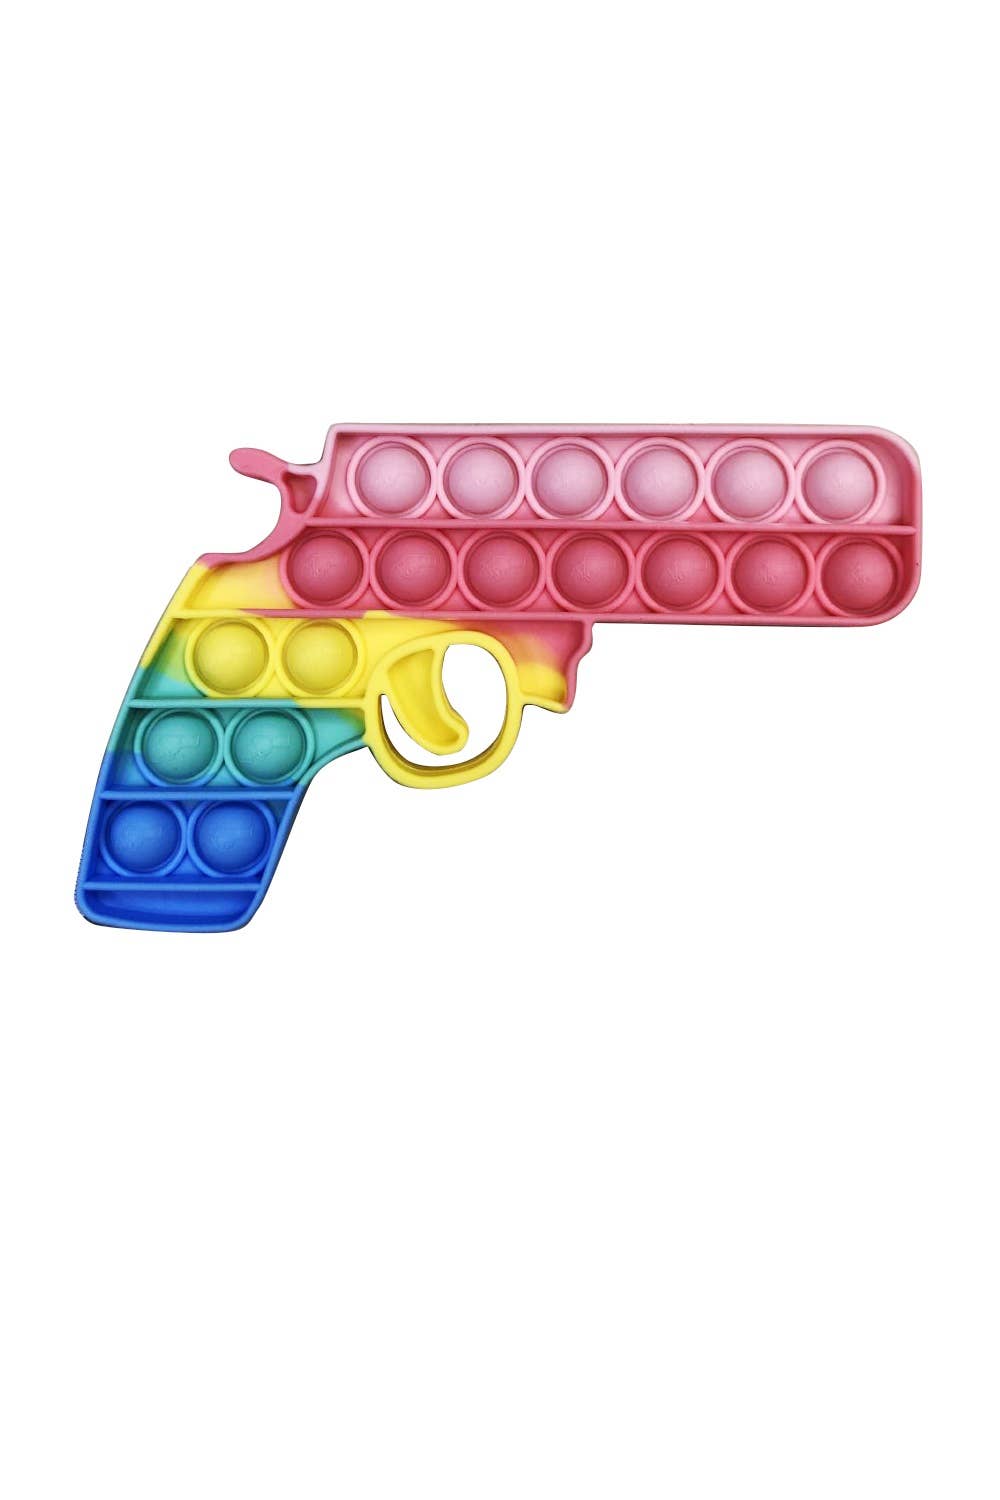 Fidget fun toys 🤩#fidget #fun #gun #fidgetshank